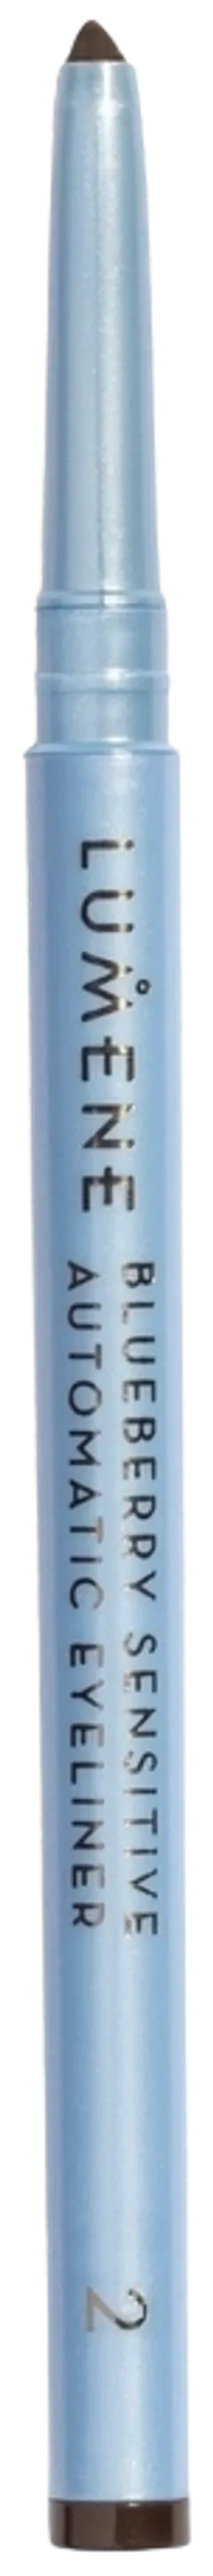 Lumene Blueberry Sensitive silmänrajauskynä 2 ruskea 0,35g - 2